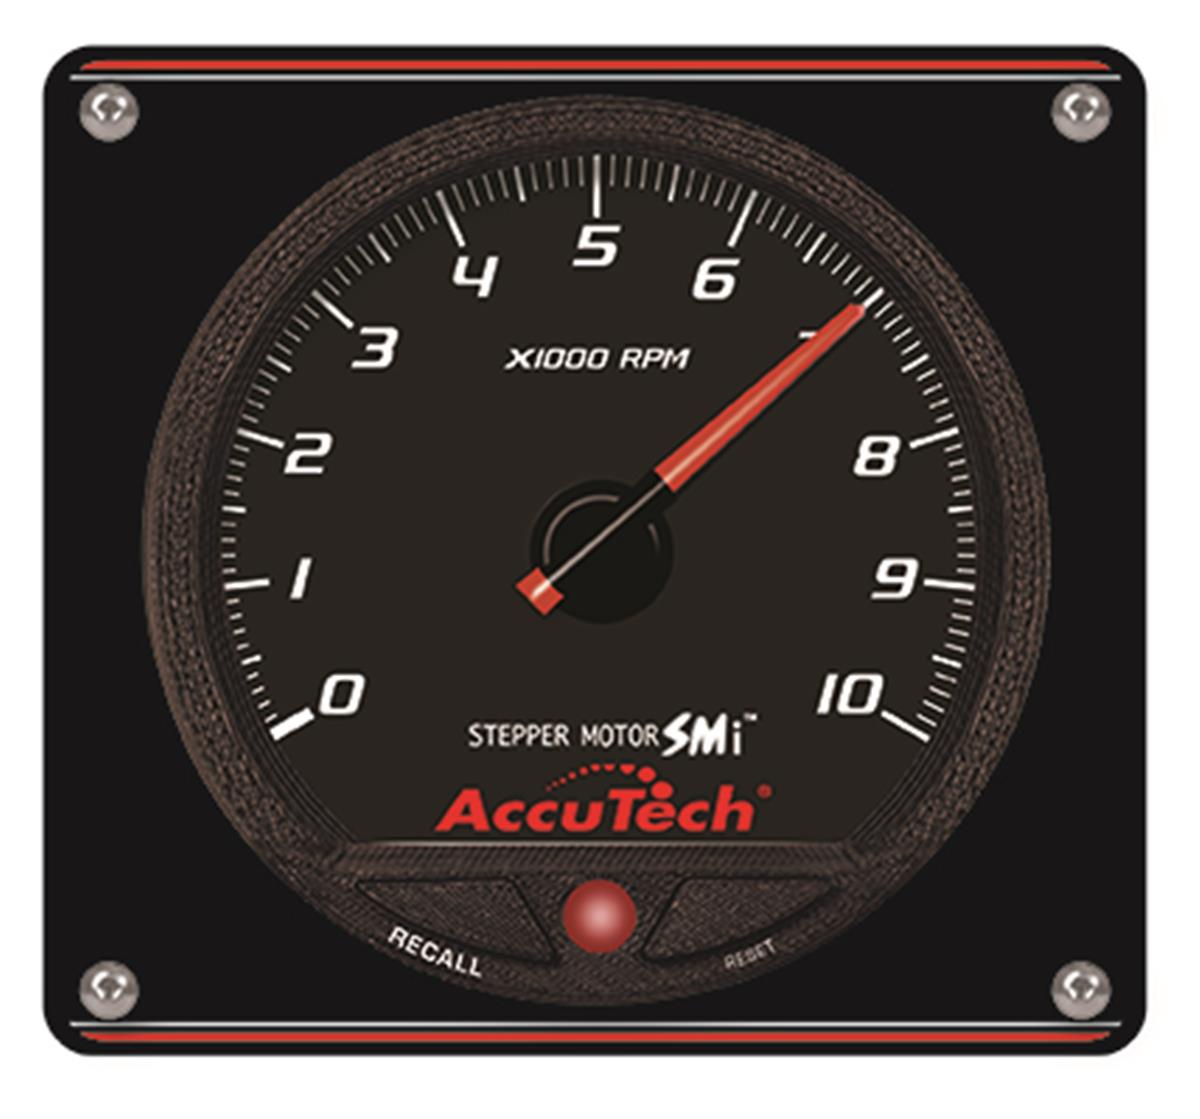 AccuTech™ SMi™ Stepper Motor Memory Tach - Black in Aluminum Panel